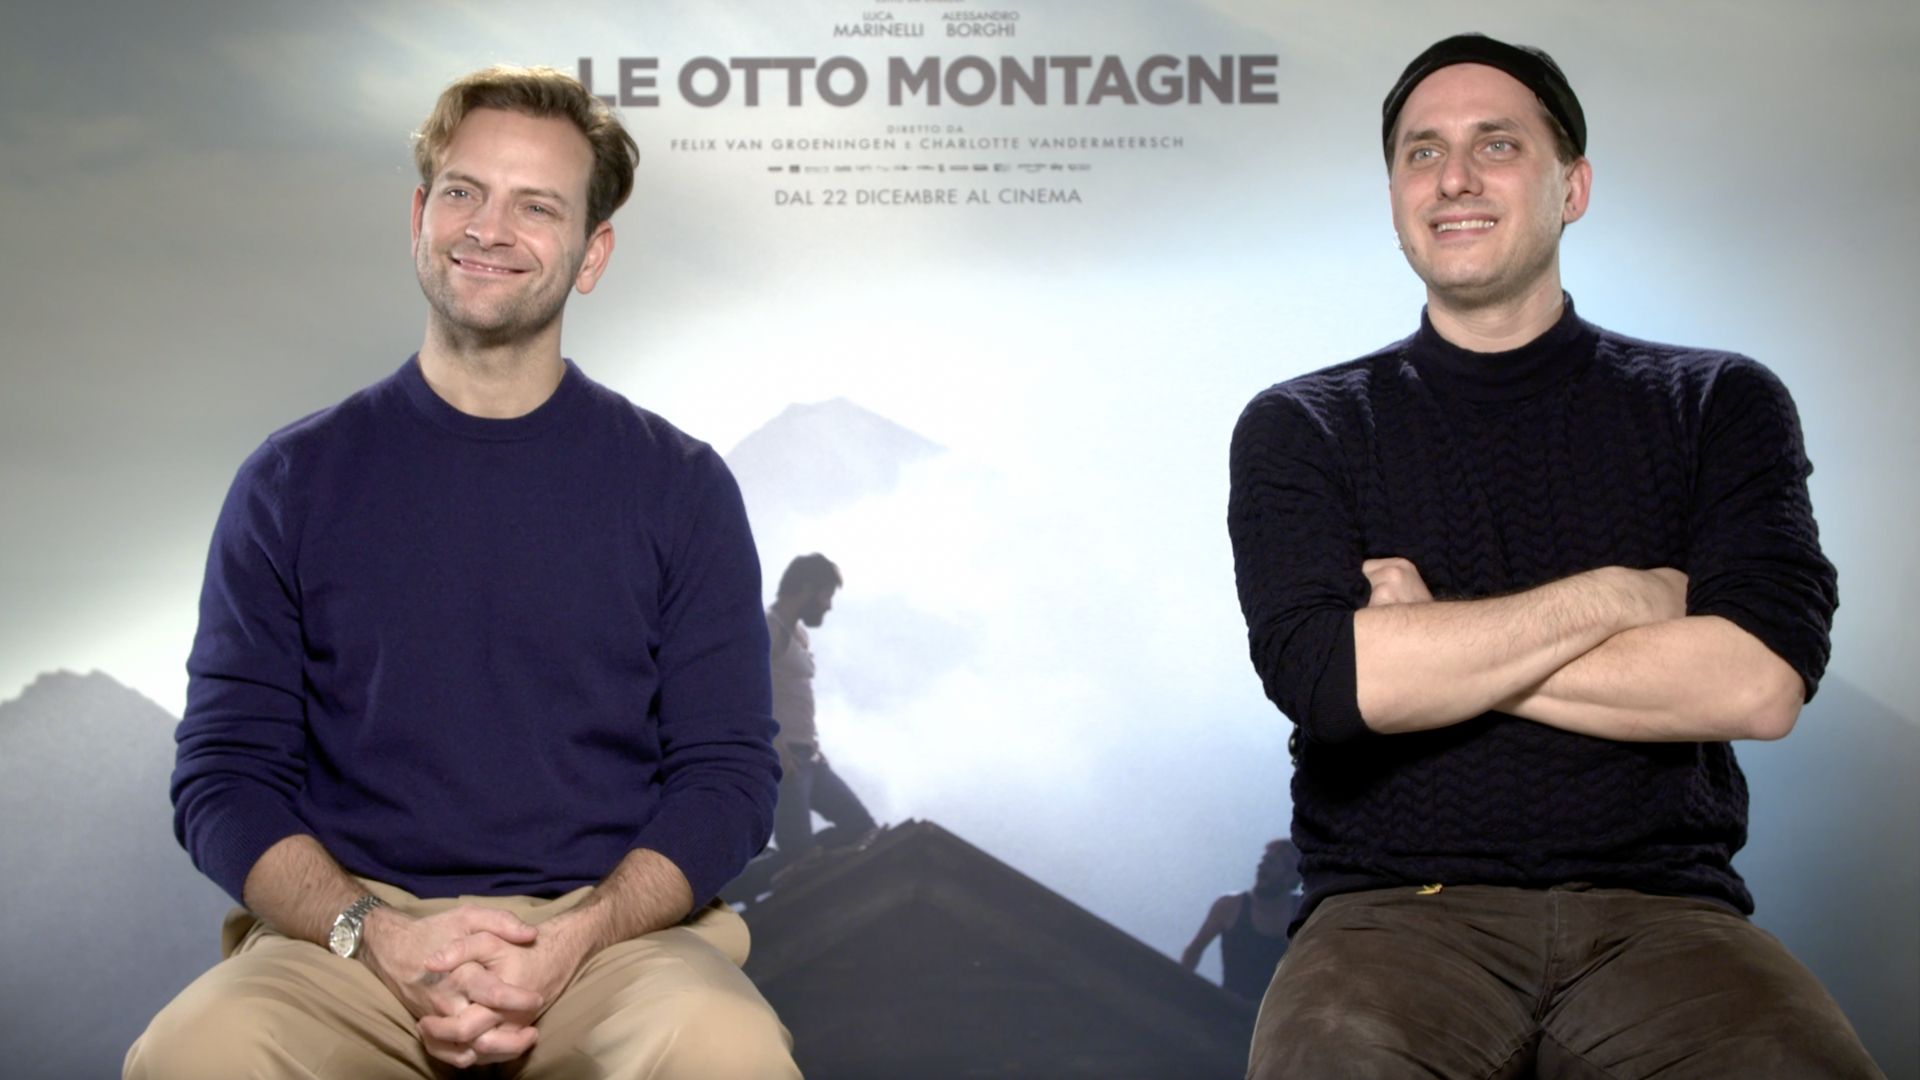 Le otto montagne, la storia di una grande amicizia al cinema